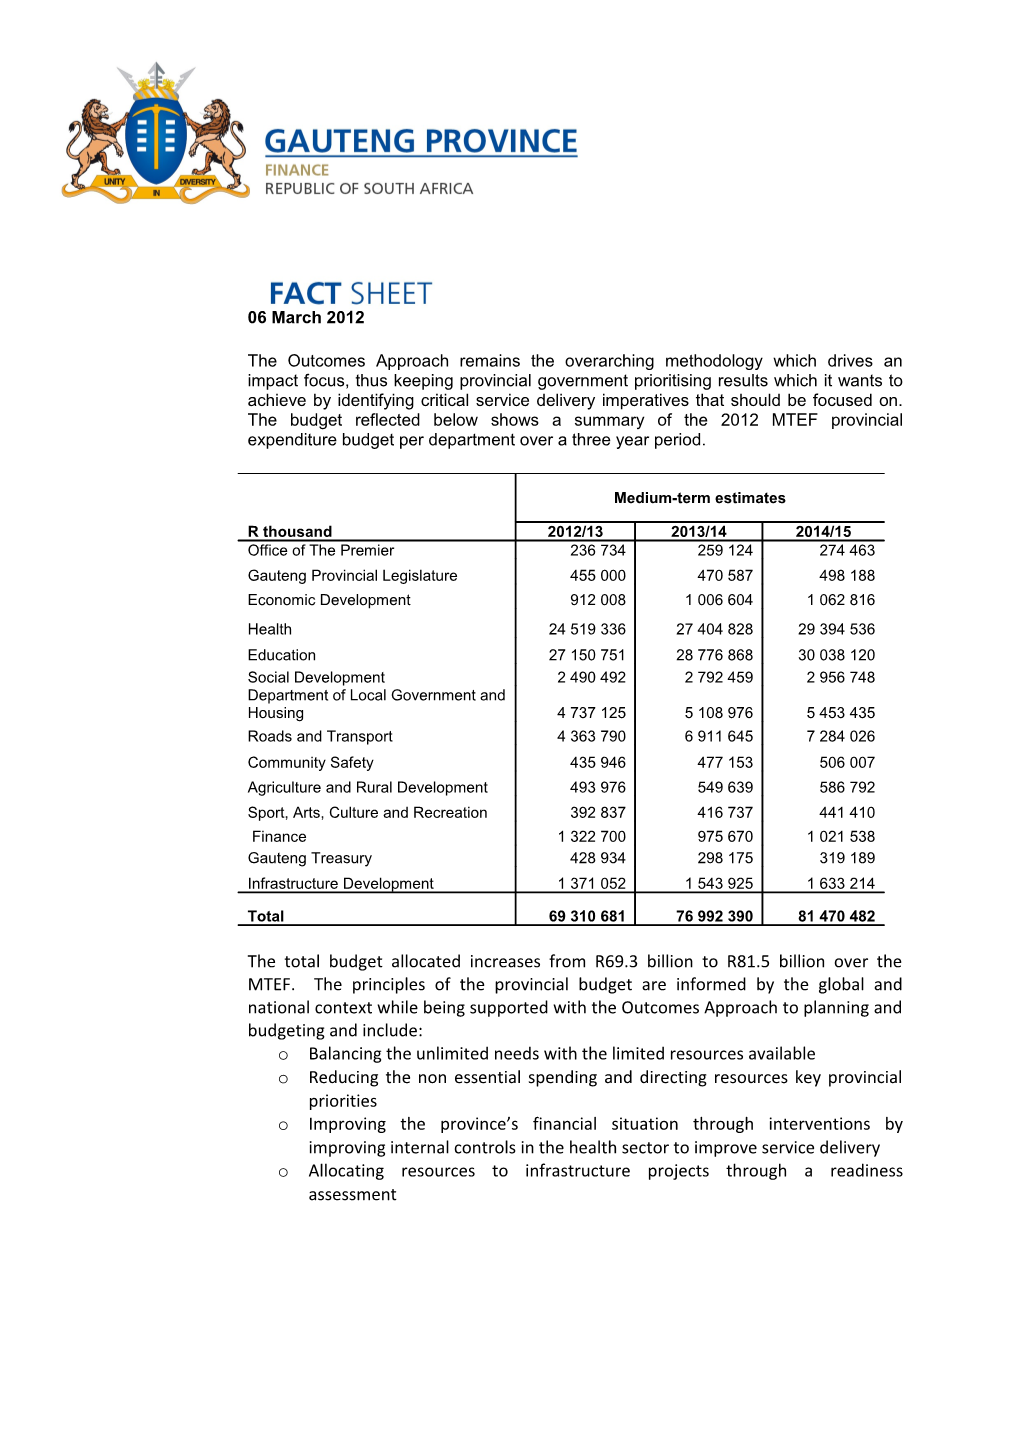 Budget Fact Sheet 2012